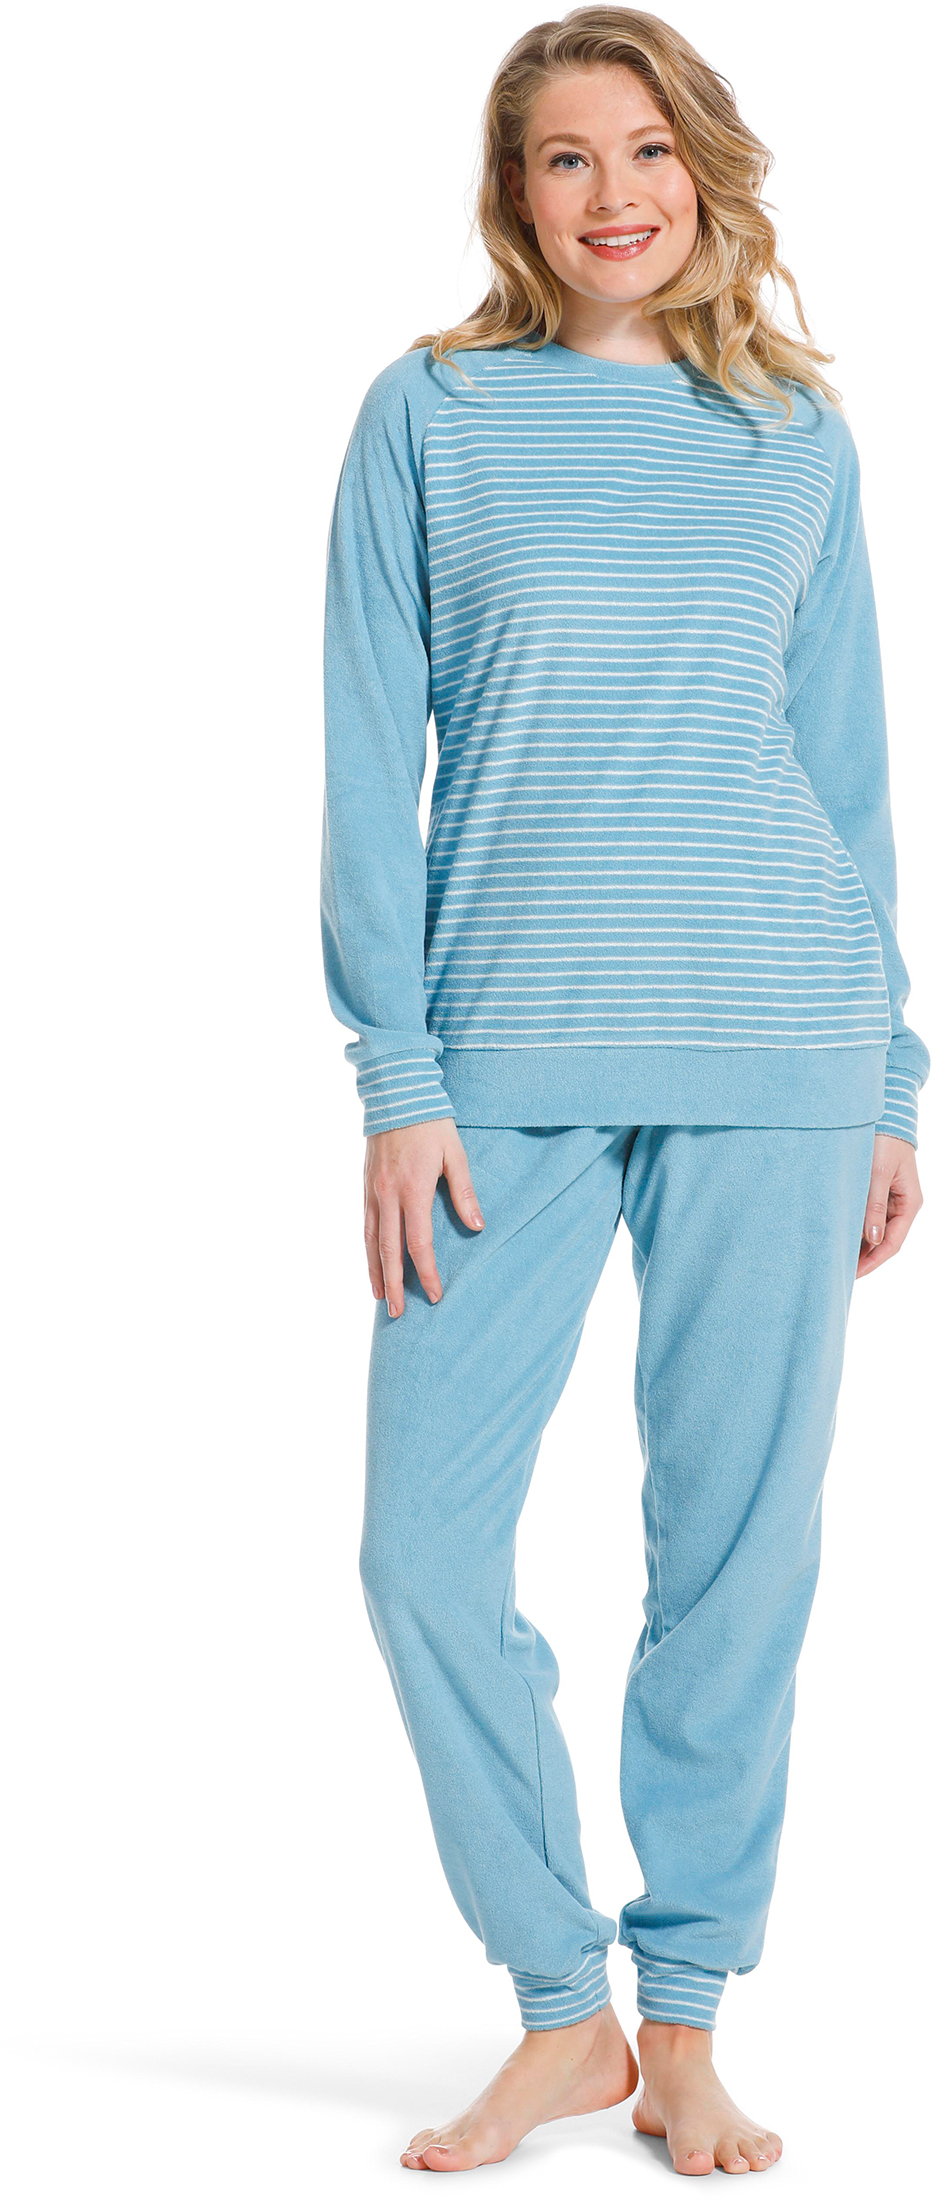 Pastunette badstof dames pyjama 20222-144-2 - Blauw - 48